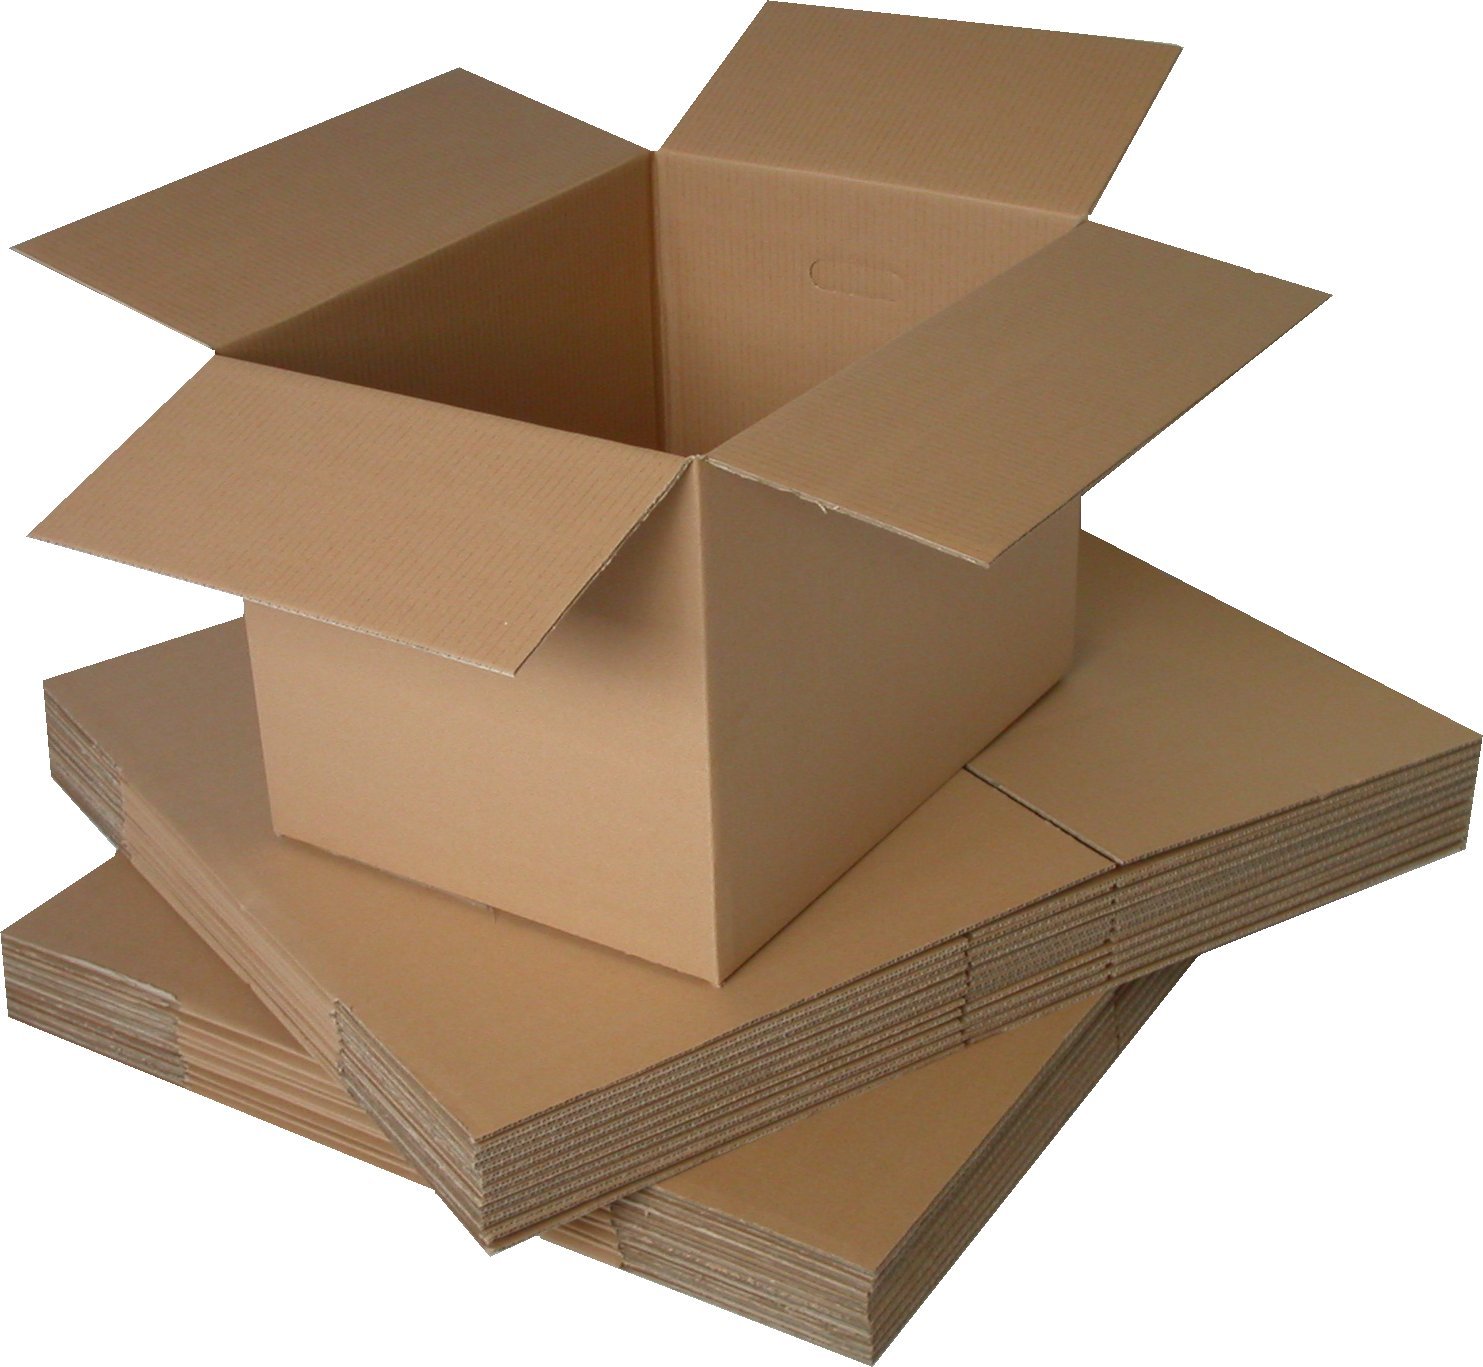 Ứng dụng của thùng carton 5 lớp trong đời sống